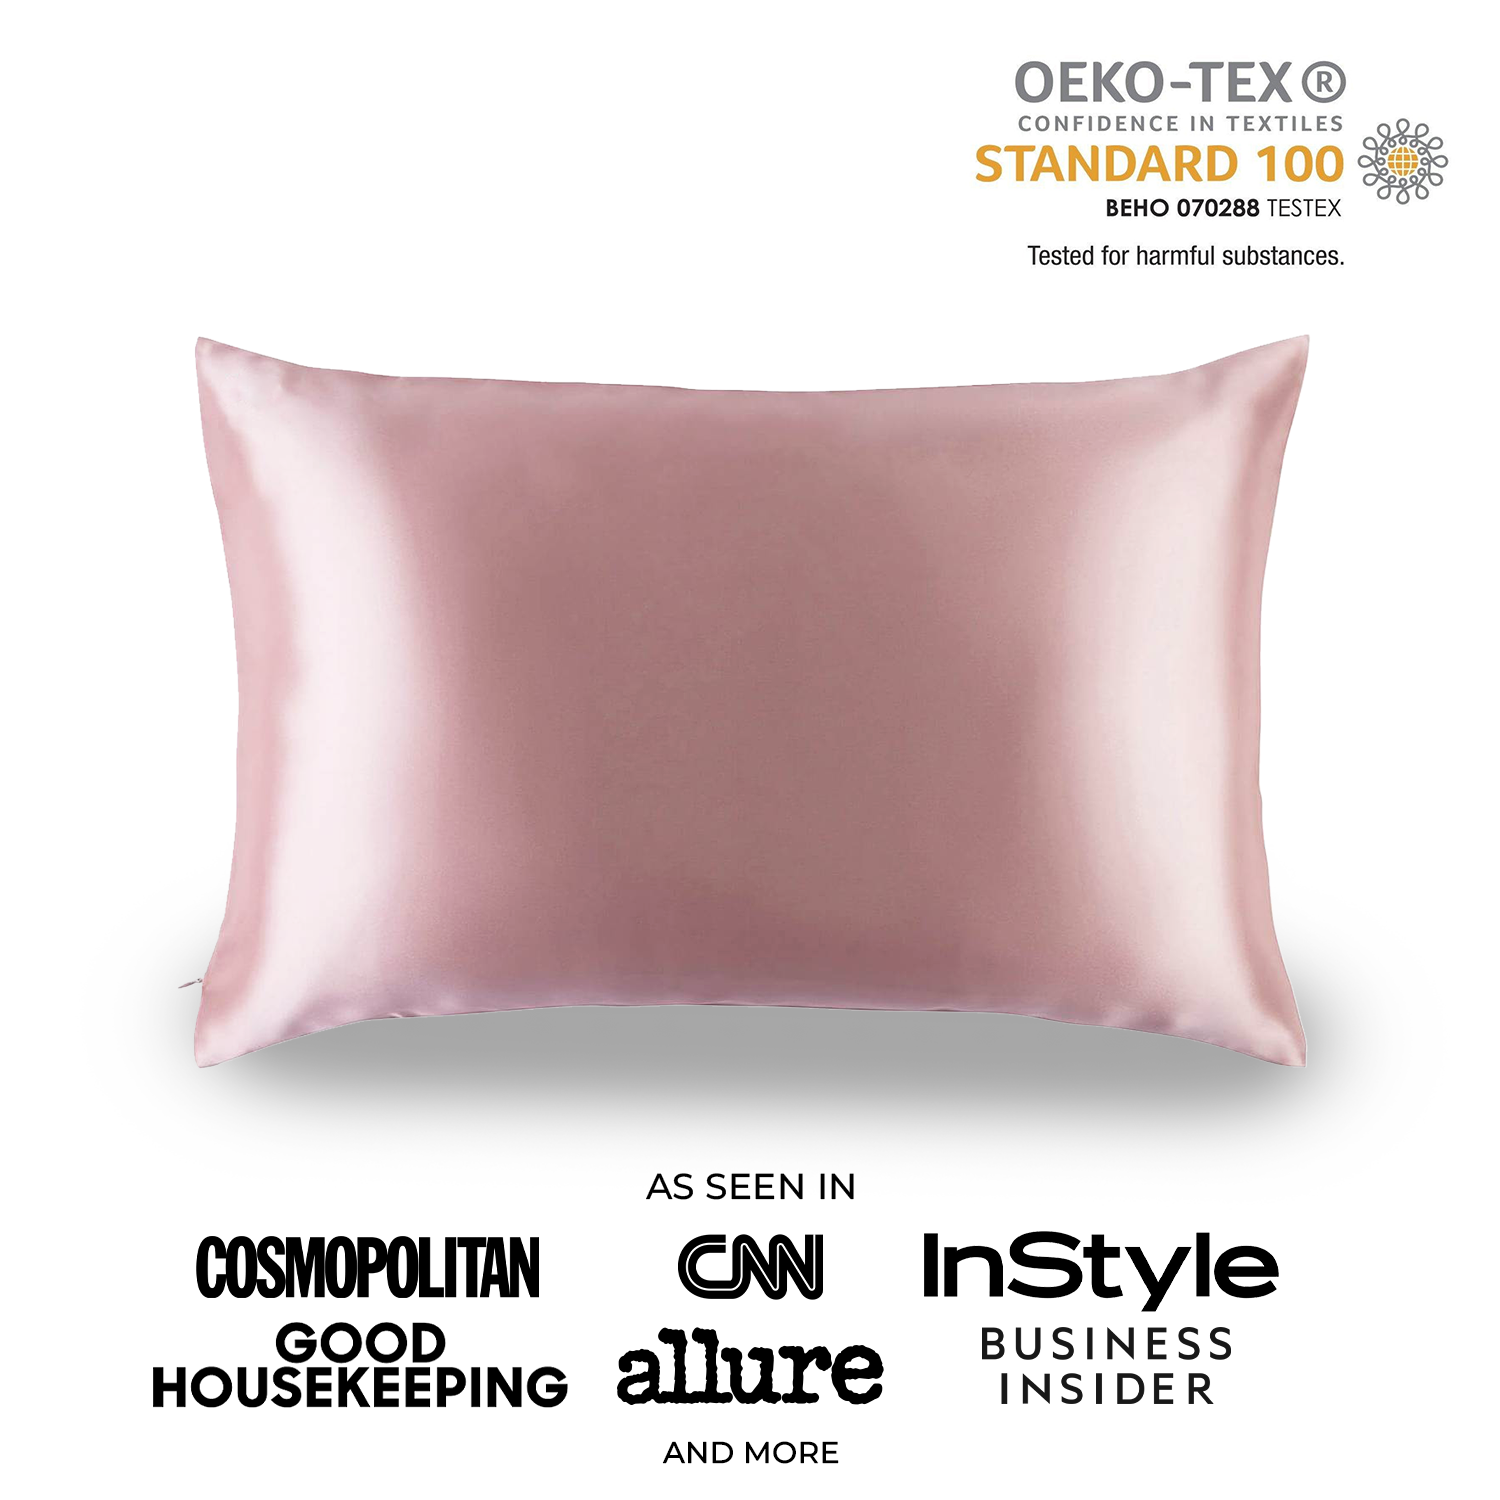 Silk Pillowcase Pink - Monday Silks NZ